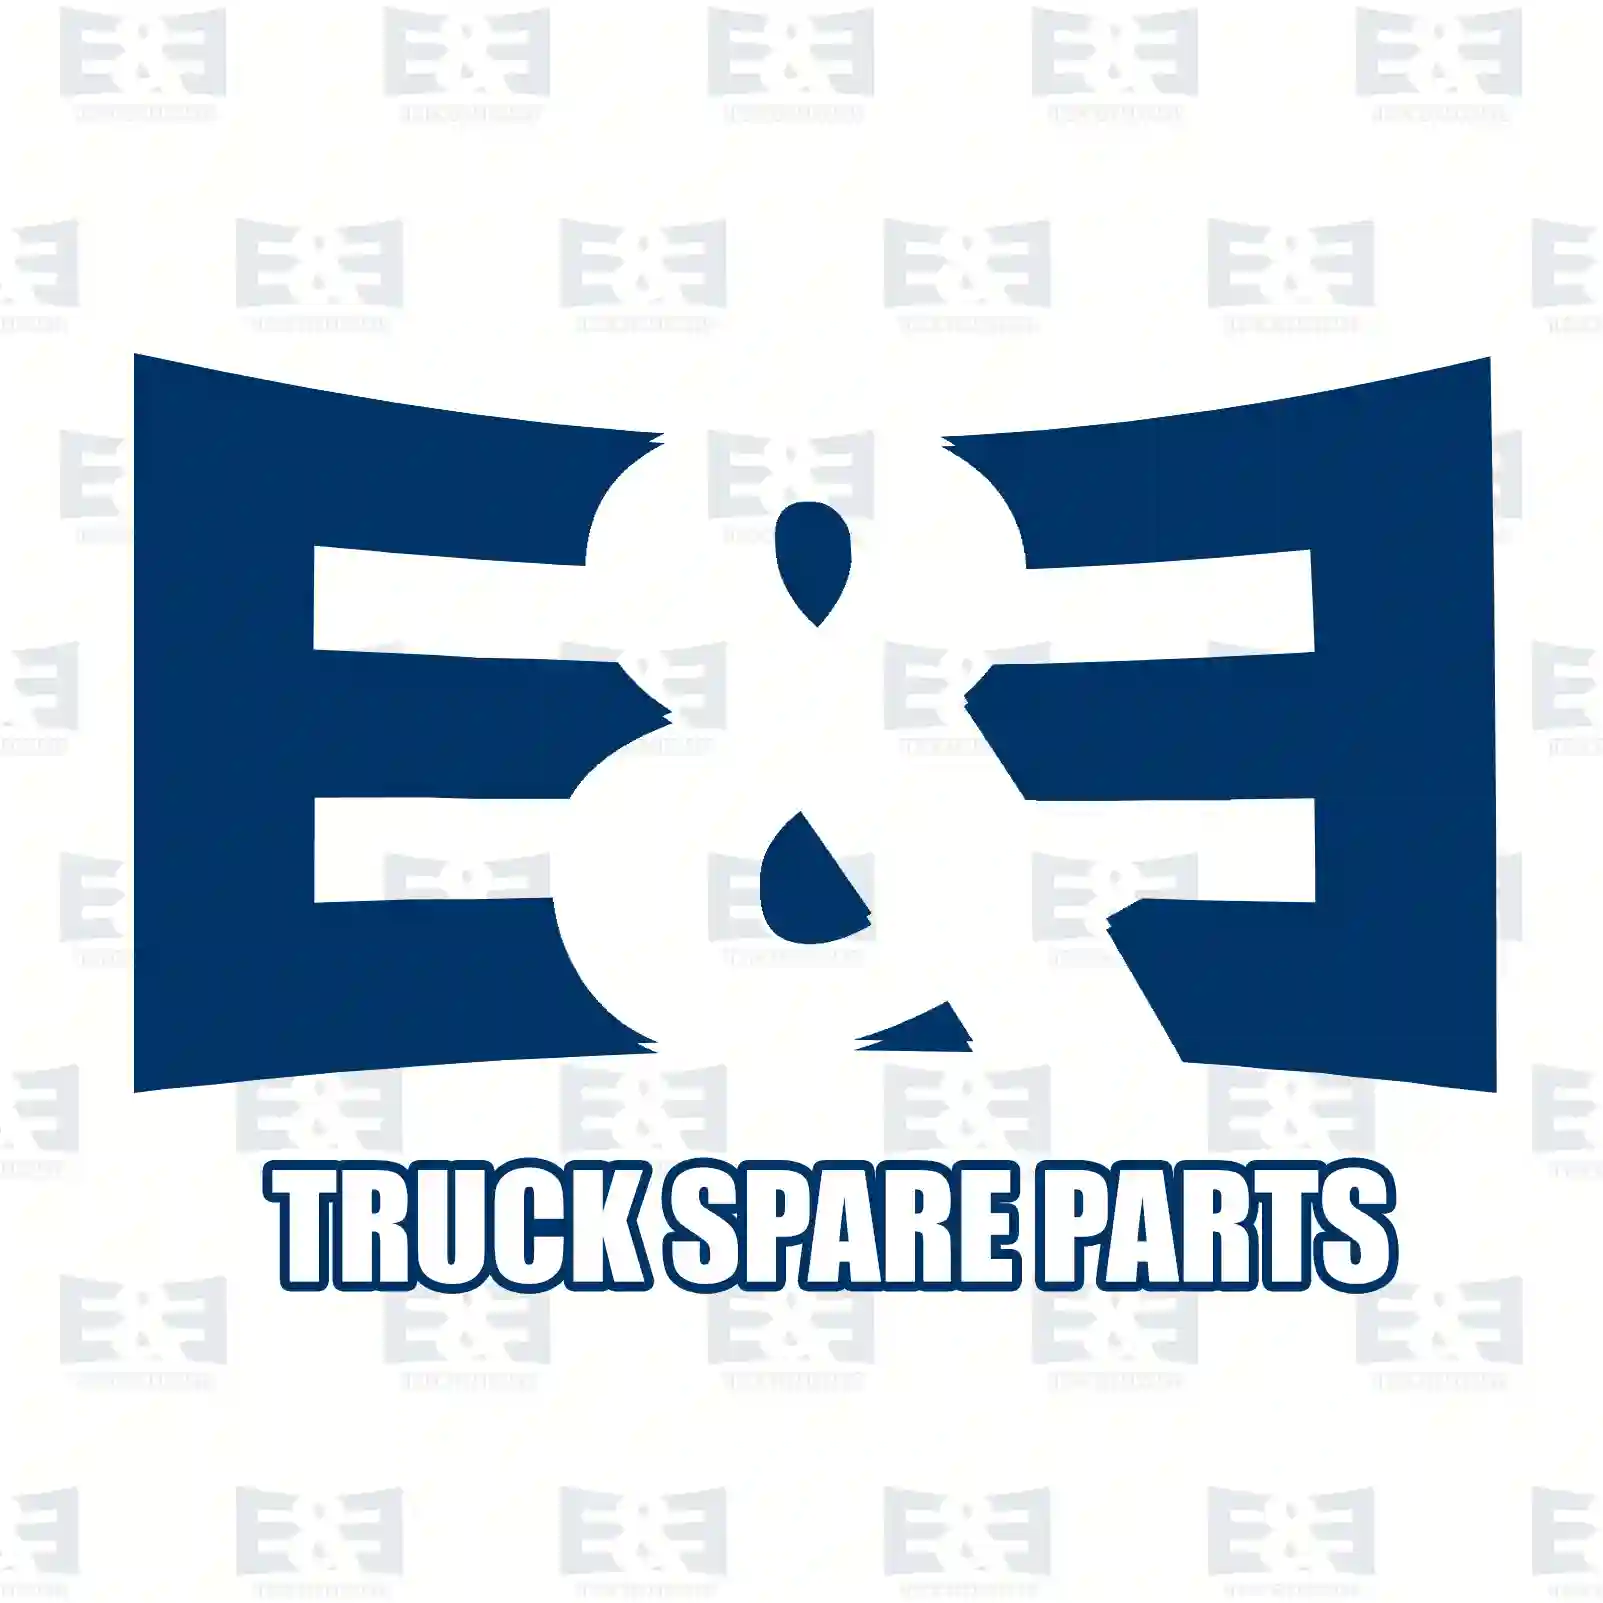 Shock absorber, rear, 2E2283858, 1136059, 1211208, V1C15-18080-CA, V1C15-18080-DA, ||  2E2283858 E&E Truck Spare Parts | Truck Spare Parts, Auotomotive Spare Parts Shock absorber, rear, 2E2283858, 1136059, 1211208, V1C15-18080-CA, V1C15-18080-DA, ||  2E2283858 E&E Truck Spare Parts | Truck Spare Parts, Auotomotive Spare Parts